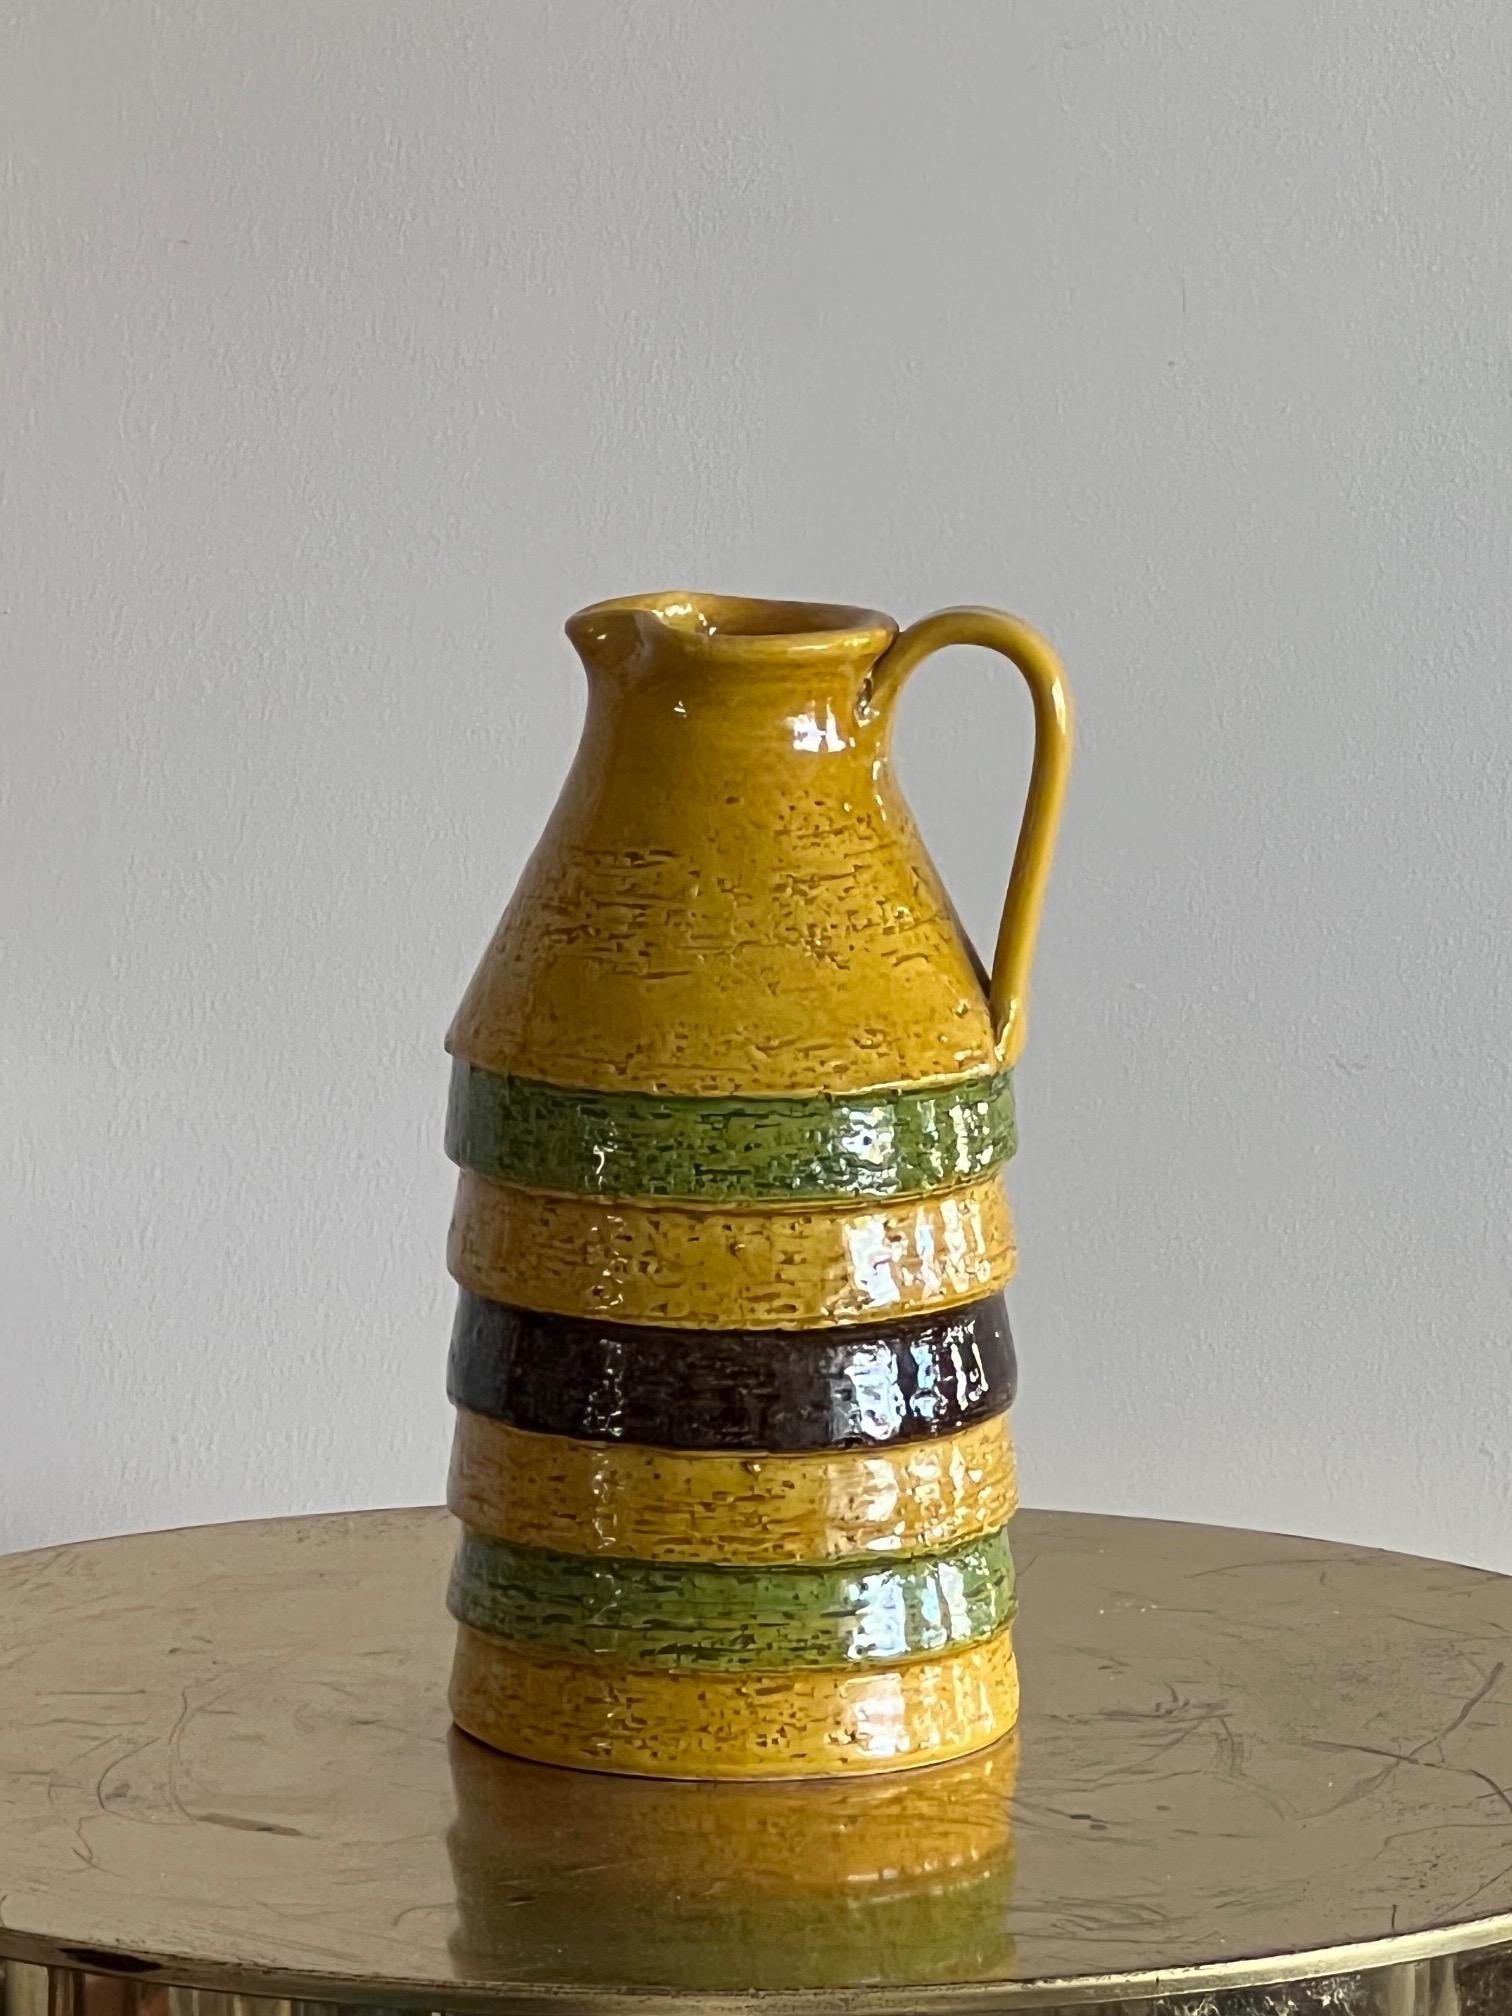 Pichet en céramique des années 1960 de Bitossi, Italie. Les glaçures jaune/orange, vertes et brunes avec des bords persillés ajoutent au caractère du design.